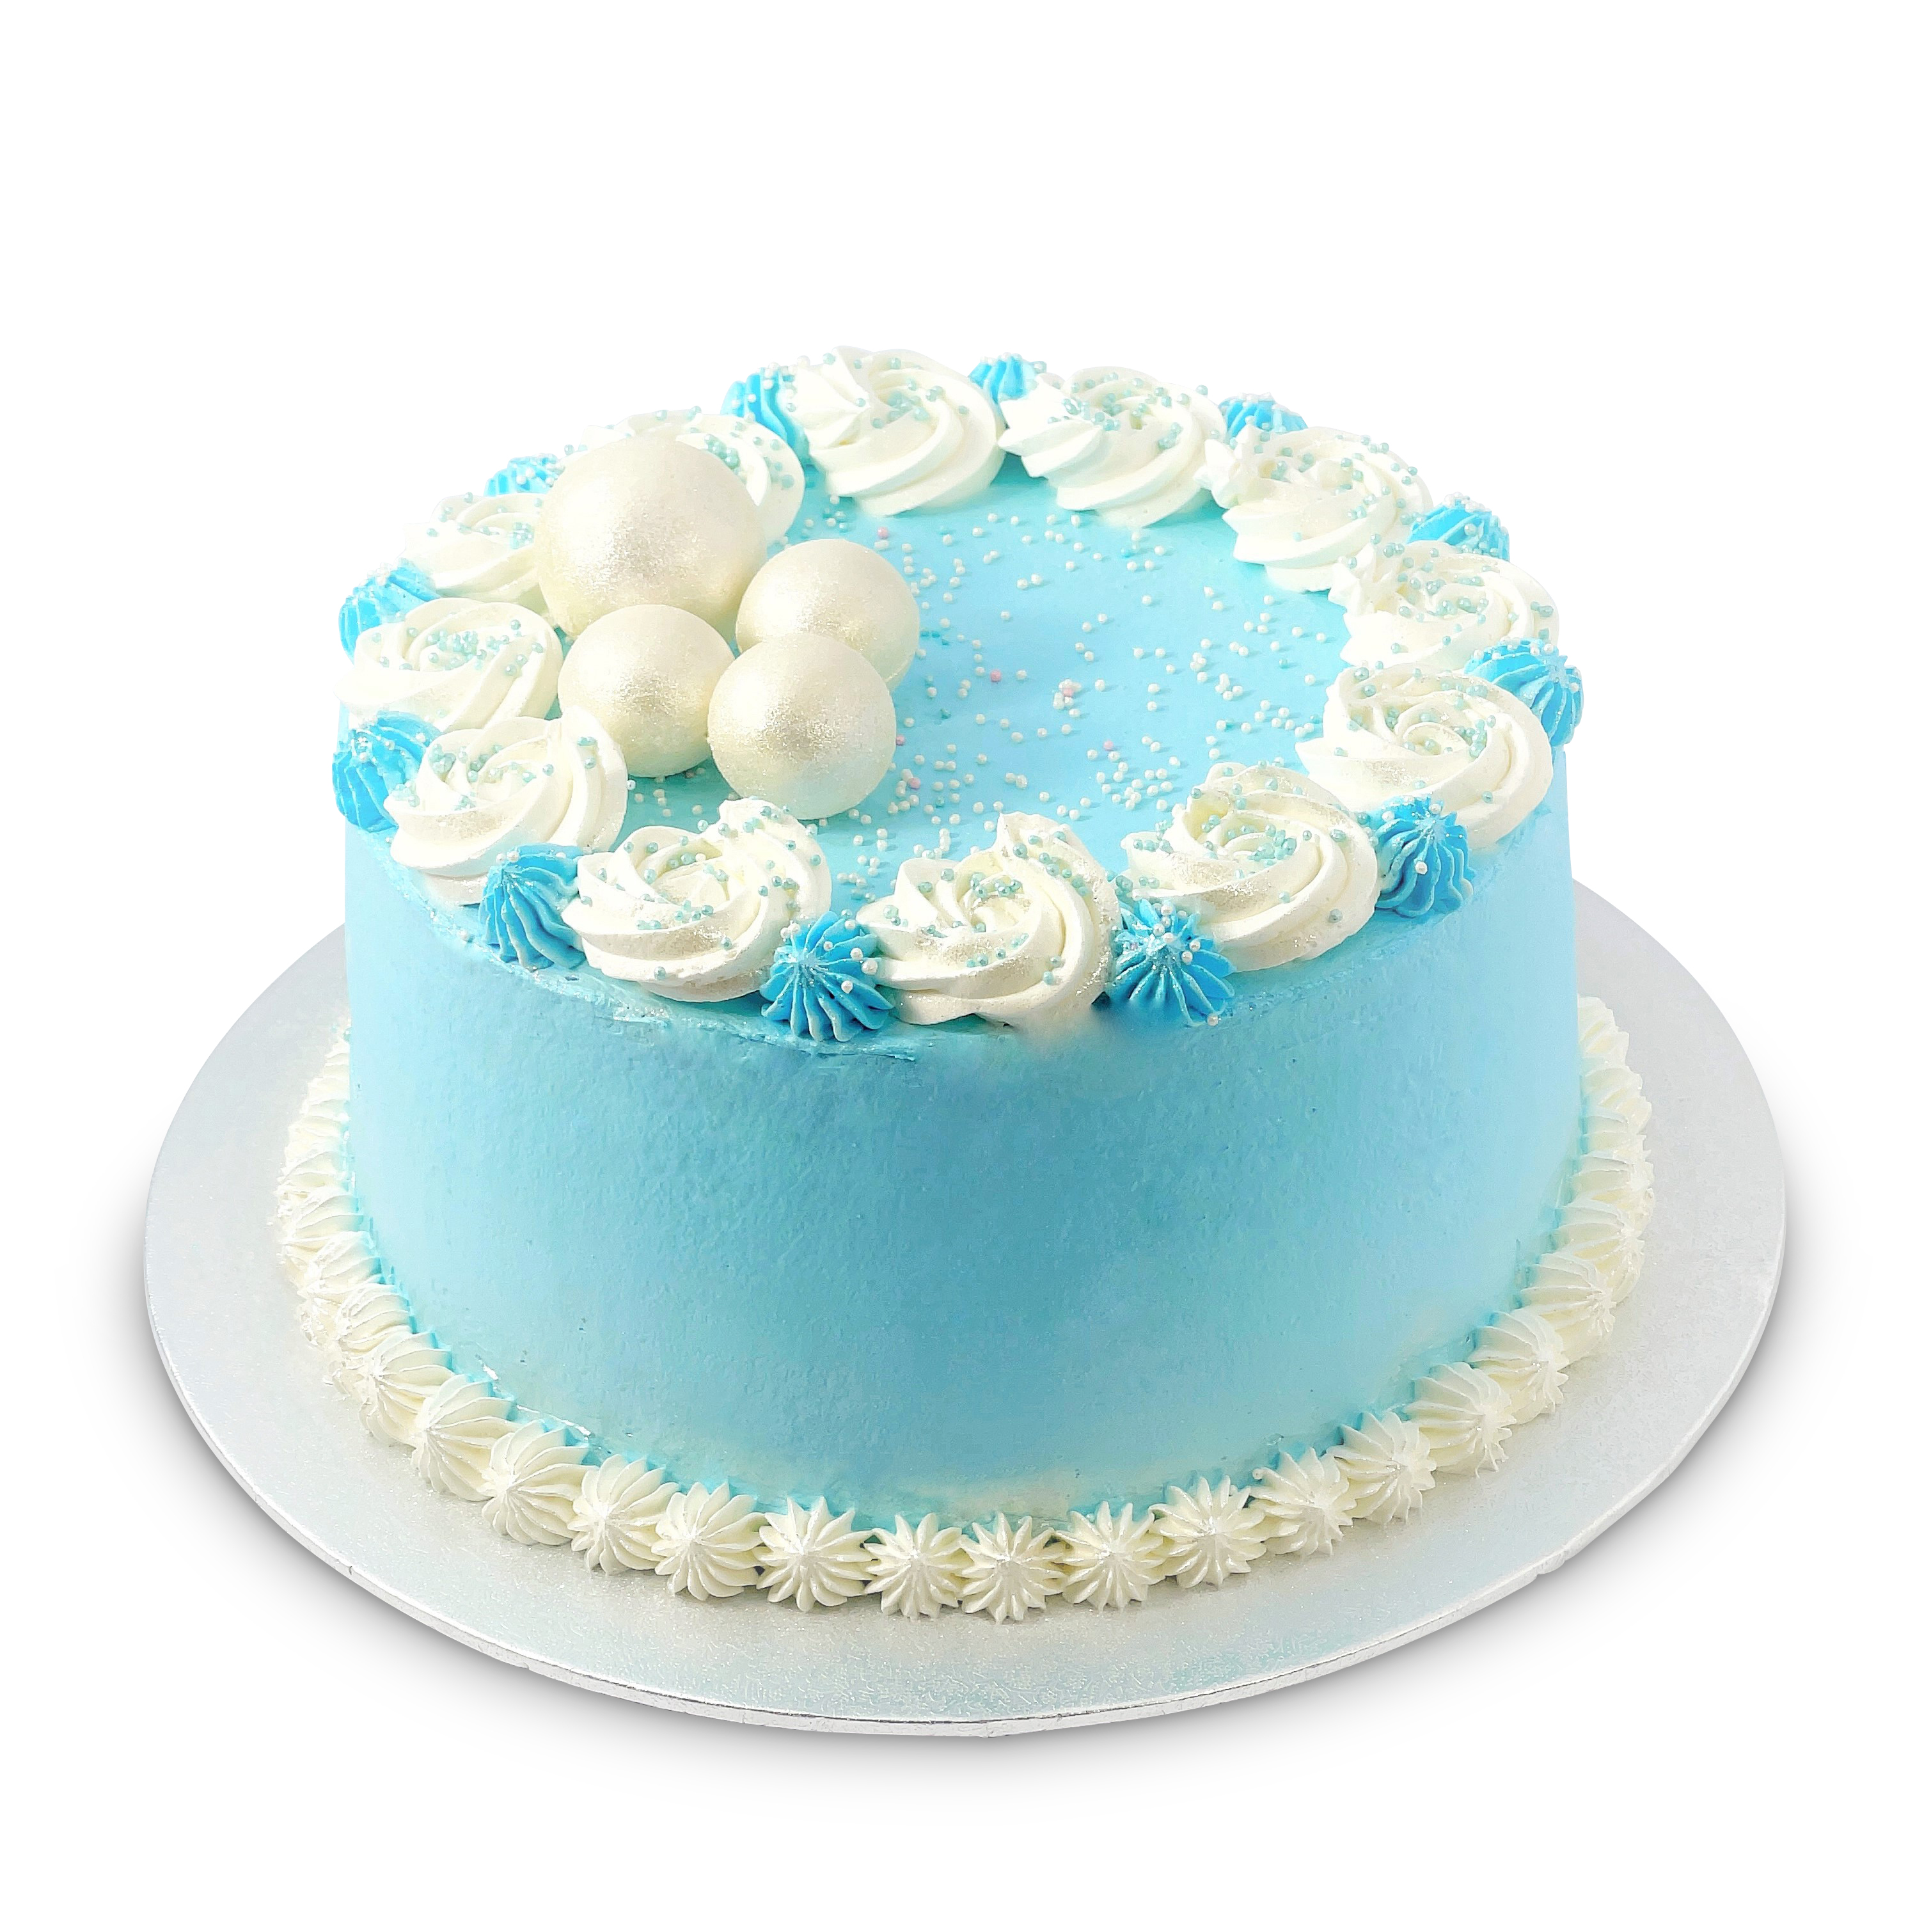 Rana’s blaue Rahm-Torte